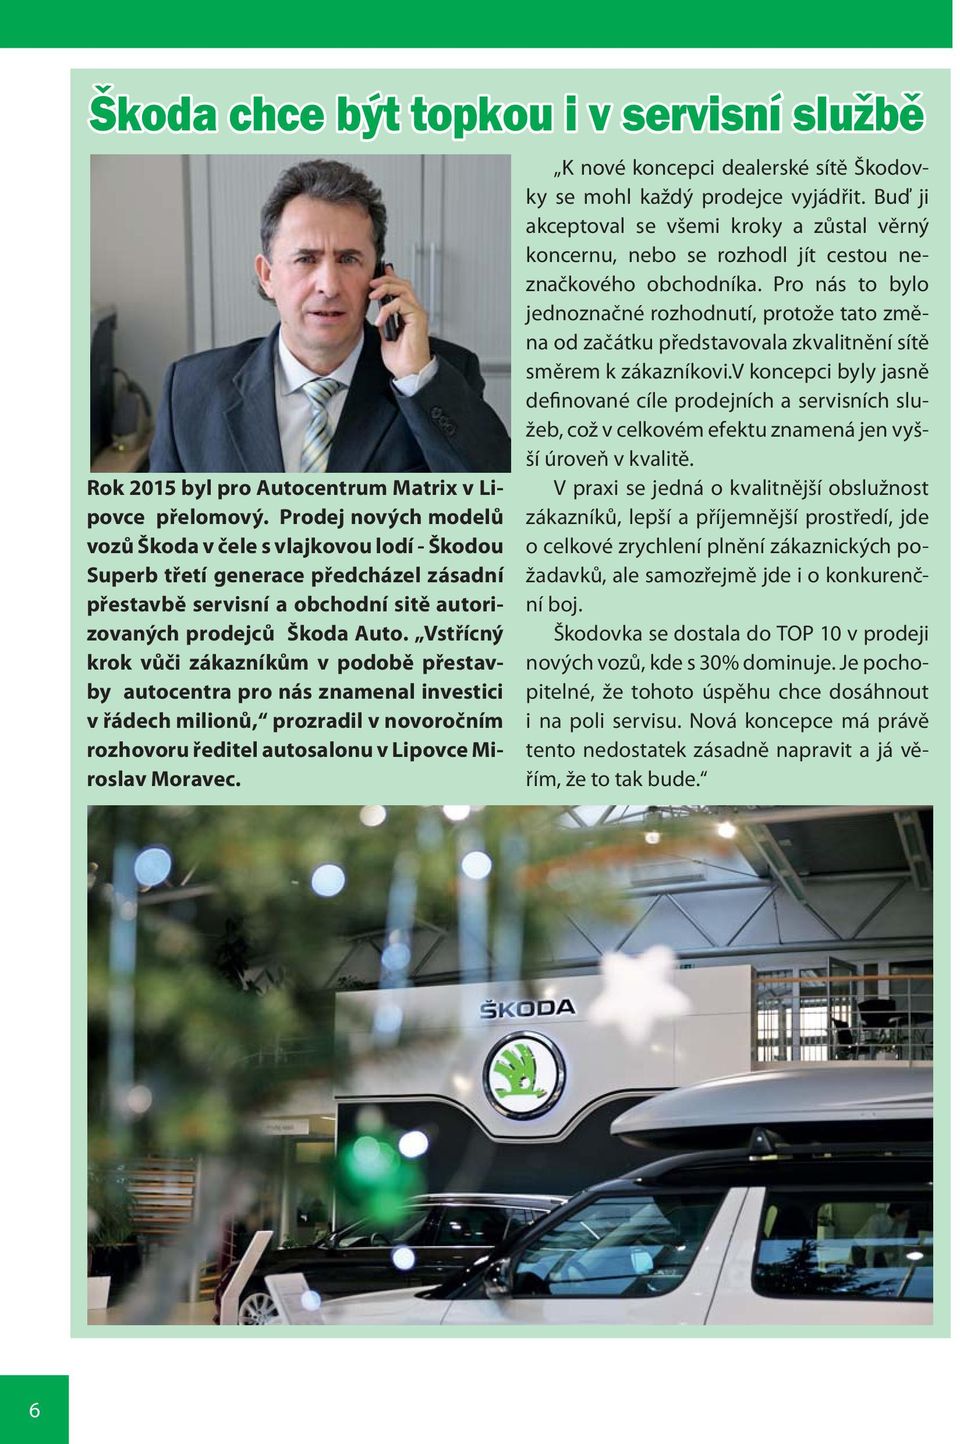 Vstřícný krok vůči zákazníkům v podobě přestavby autocentra pro nás znamenal investici v řádech milionů, prozradil v novoročním rozhovoru ředitel autosalonu v Lipovce Miroslav Moravec.